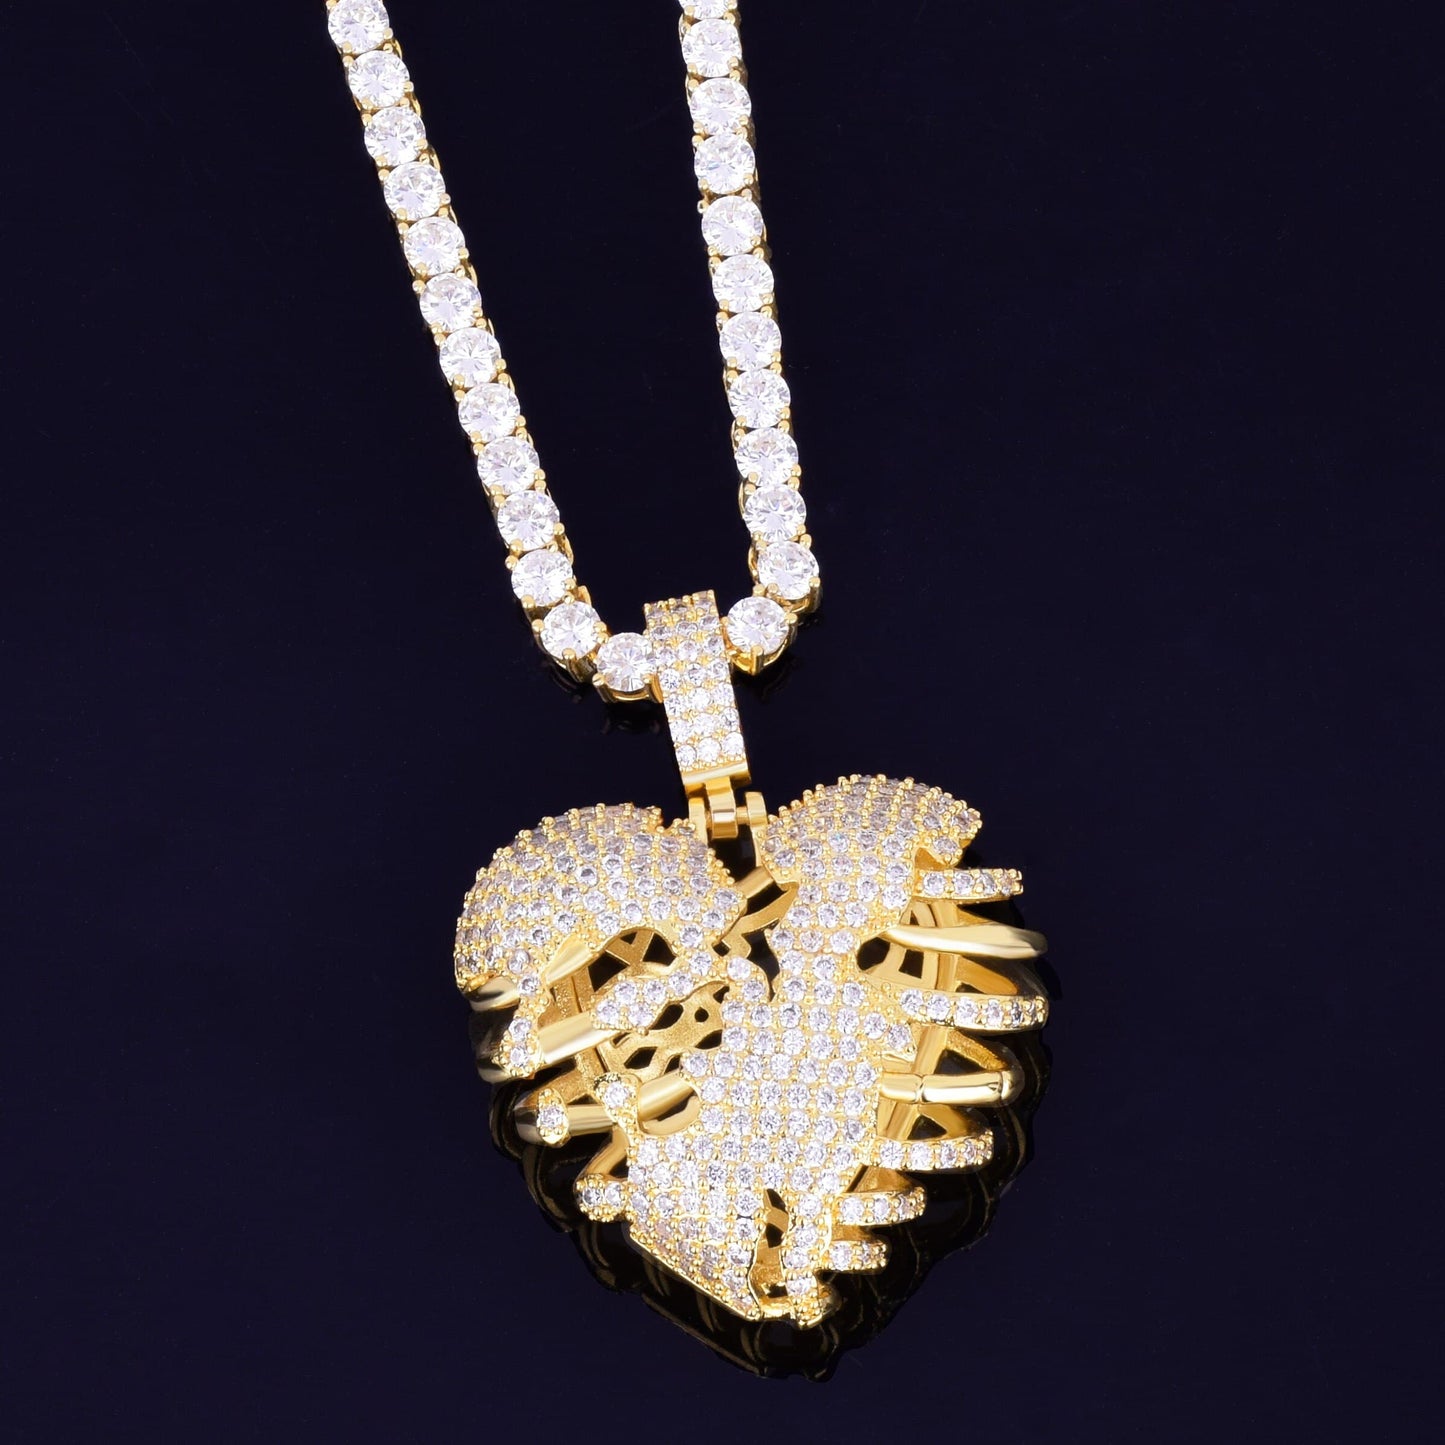 Gold Color Broken Skeleton Heart Pendant Necklace With Tennis Chain AAA Cubic Zircon Men's Hip hop Rock Jewelry